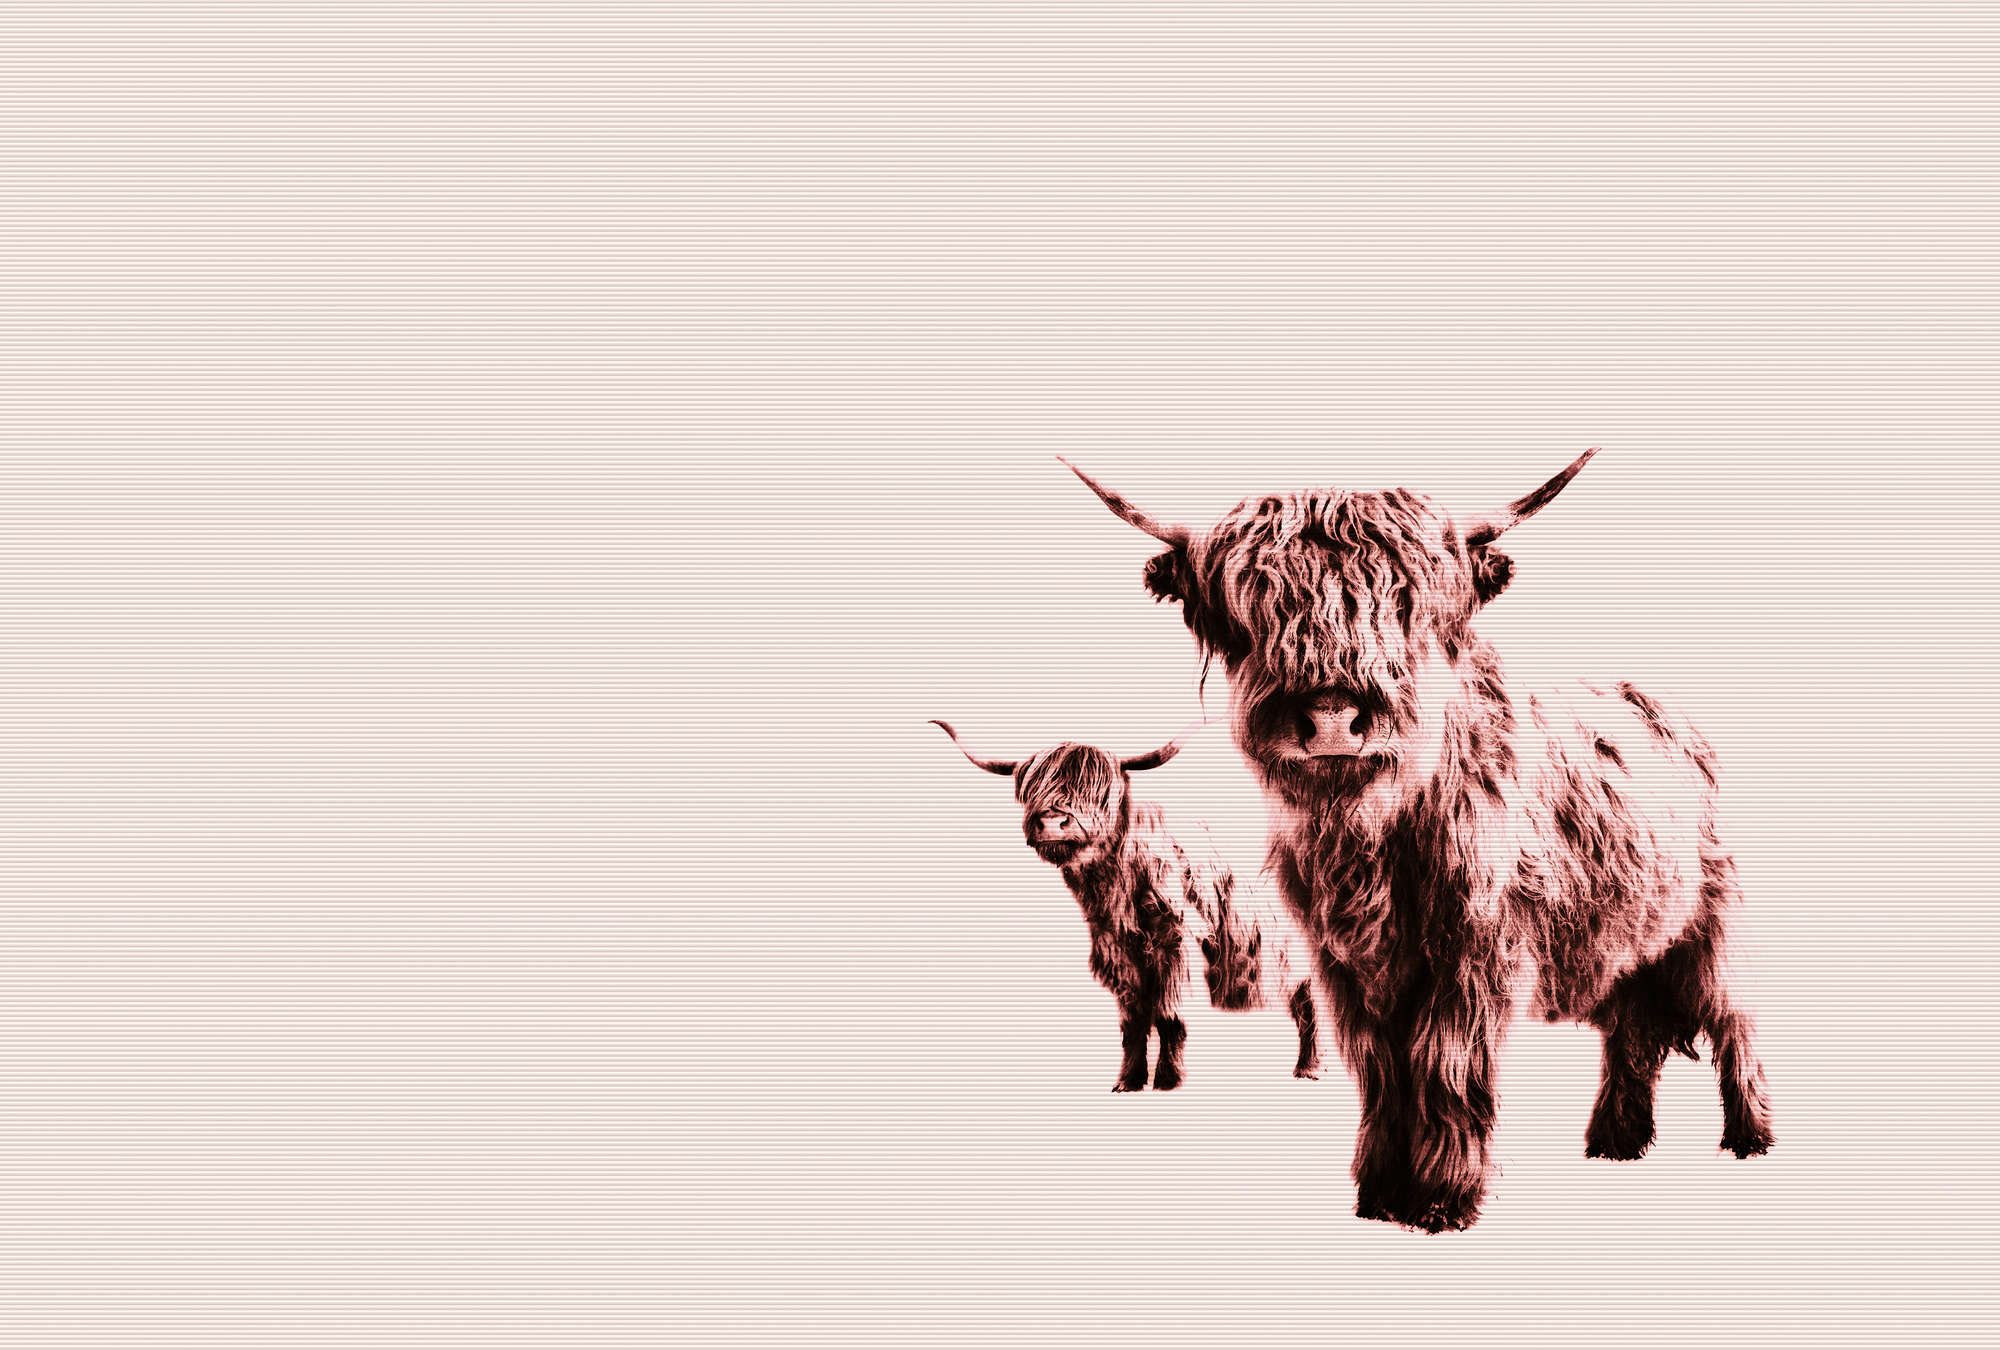             Highland Cattle Behang met Shaggy Dierenmotief
        